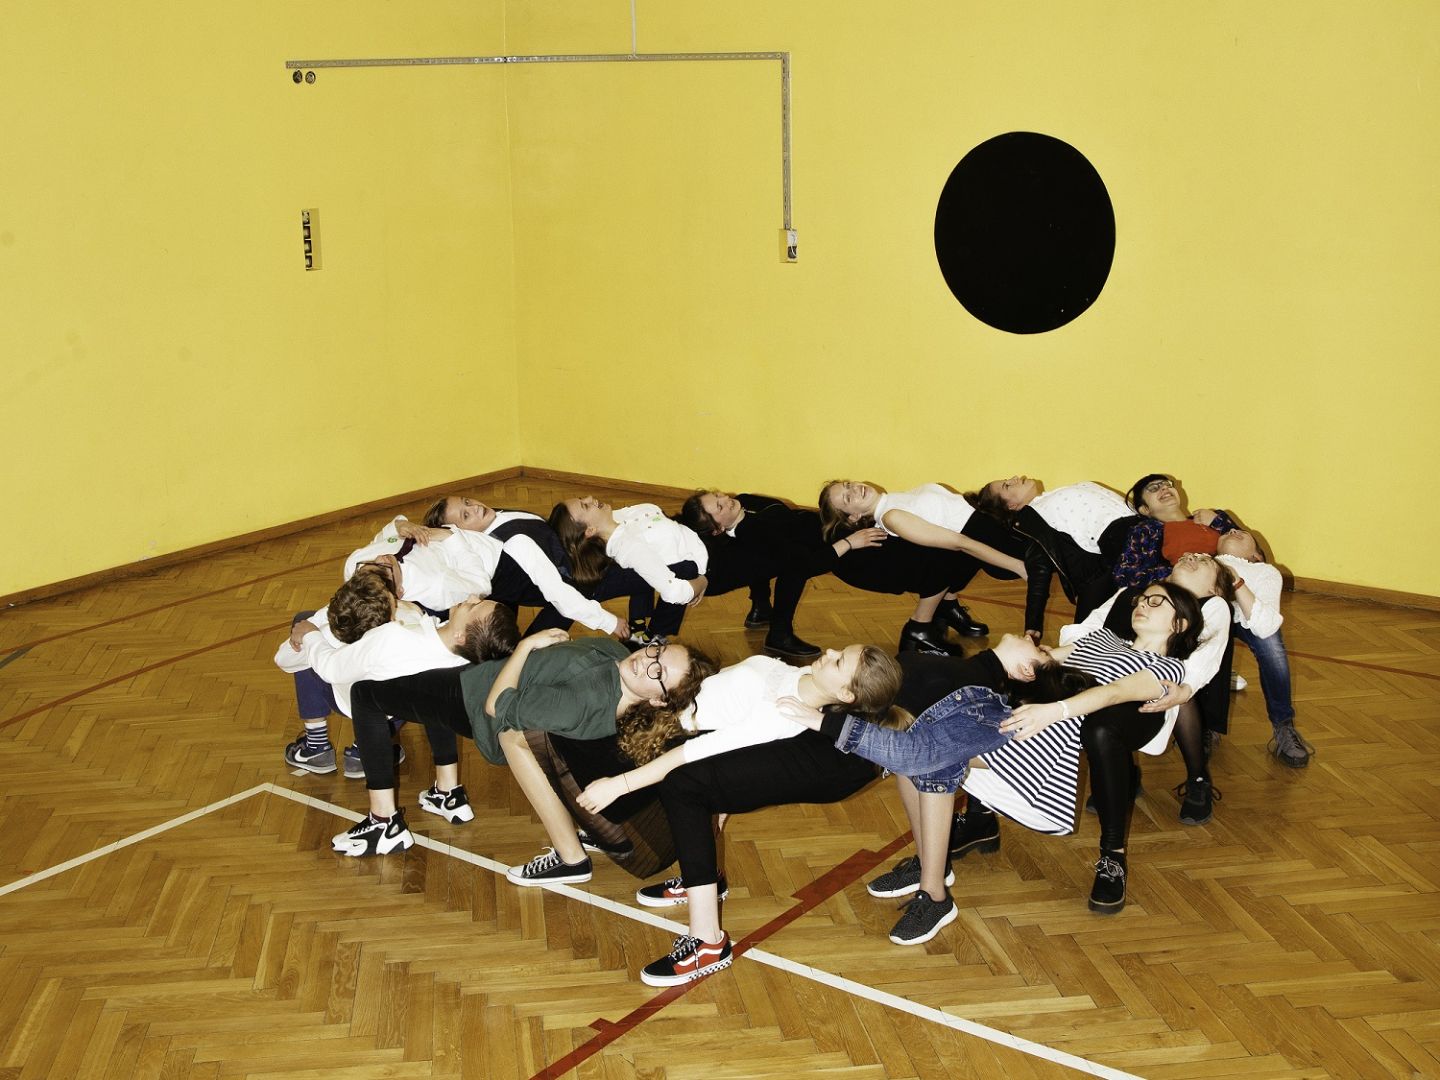 Das Foto zeigt eine Gruppe Jugendlicher, die sich nach hinten auf die jeweils andere Person lehnen und dadurch einen Kreis bilden.